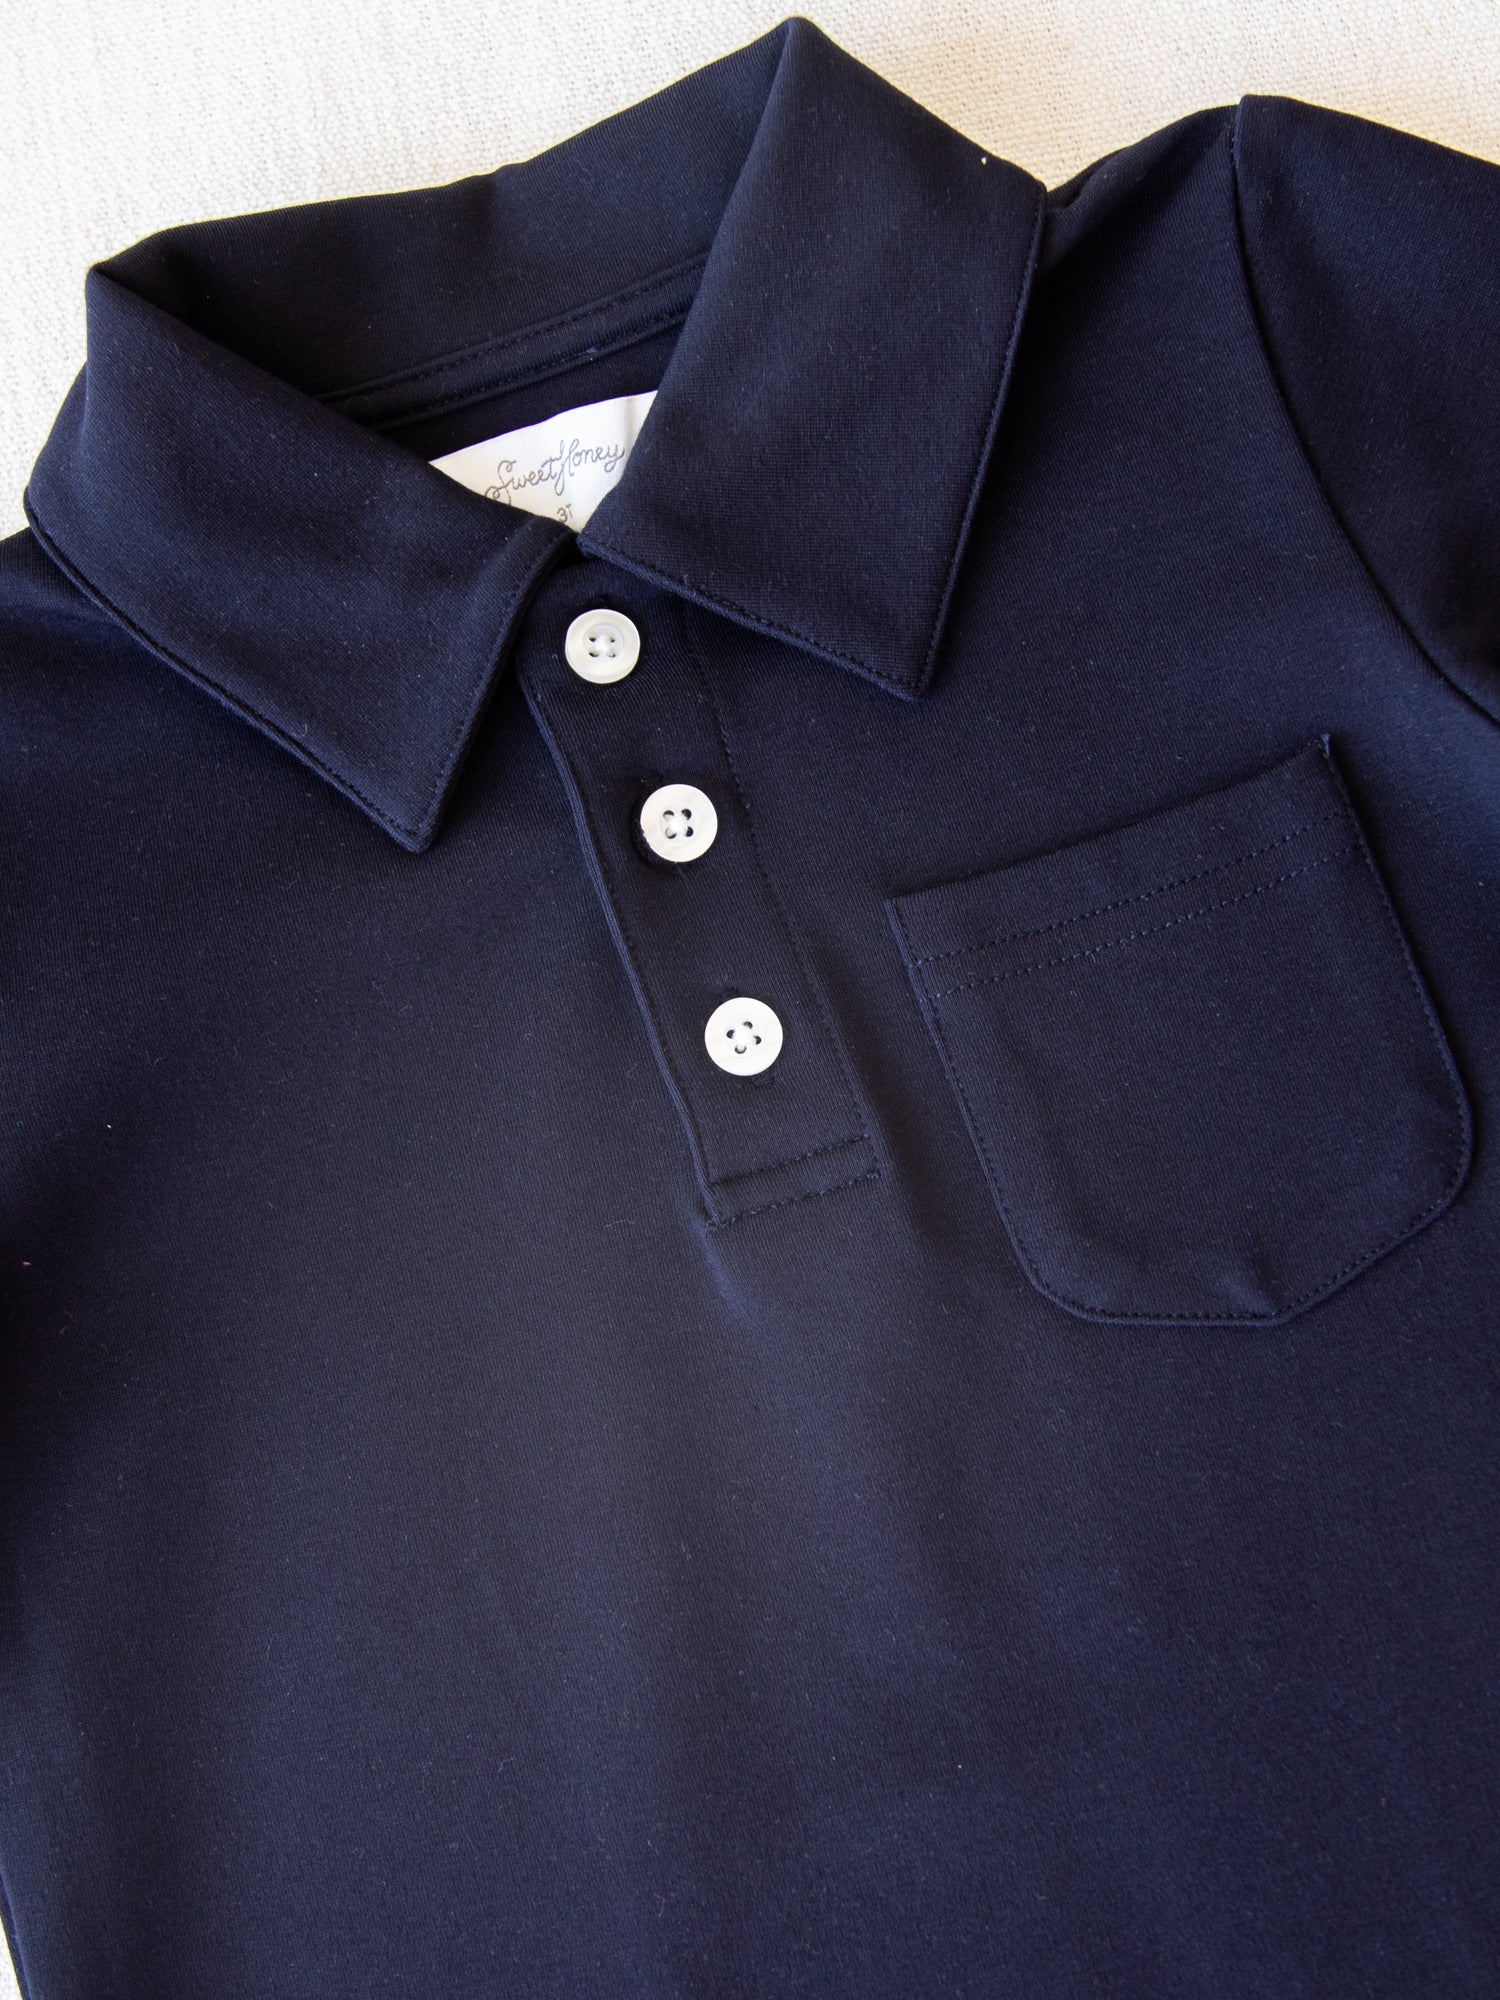 Polo Shirt - - SweetHoney Clothing Night Sky